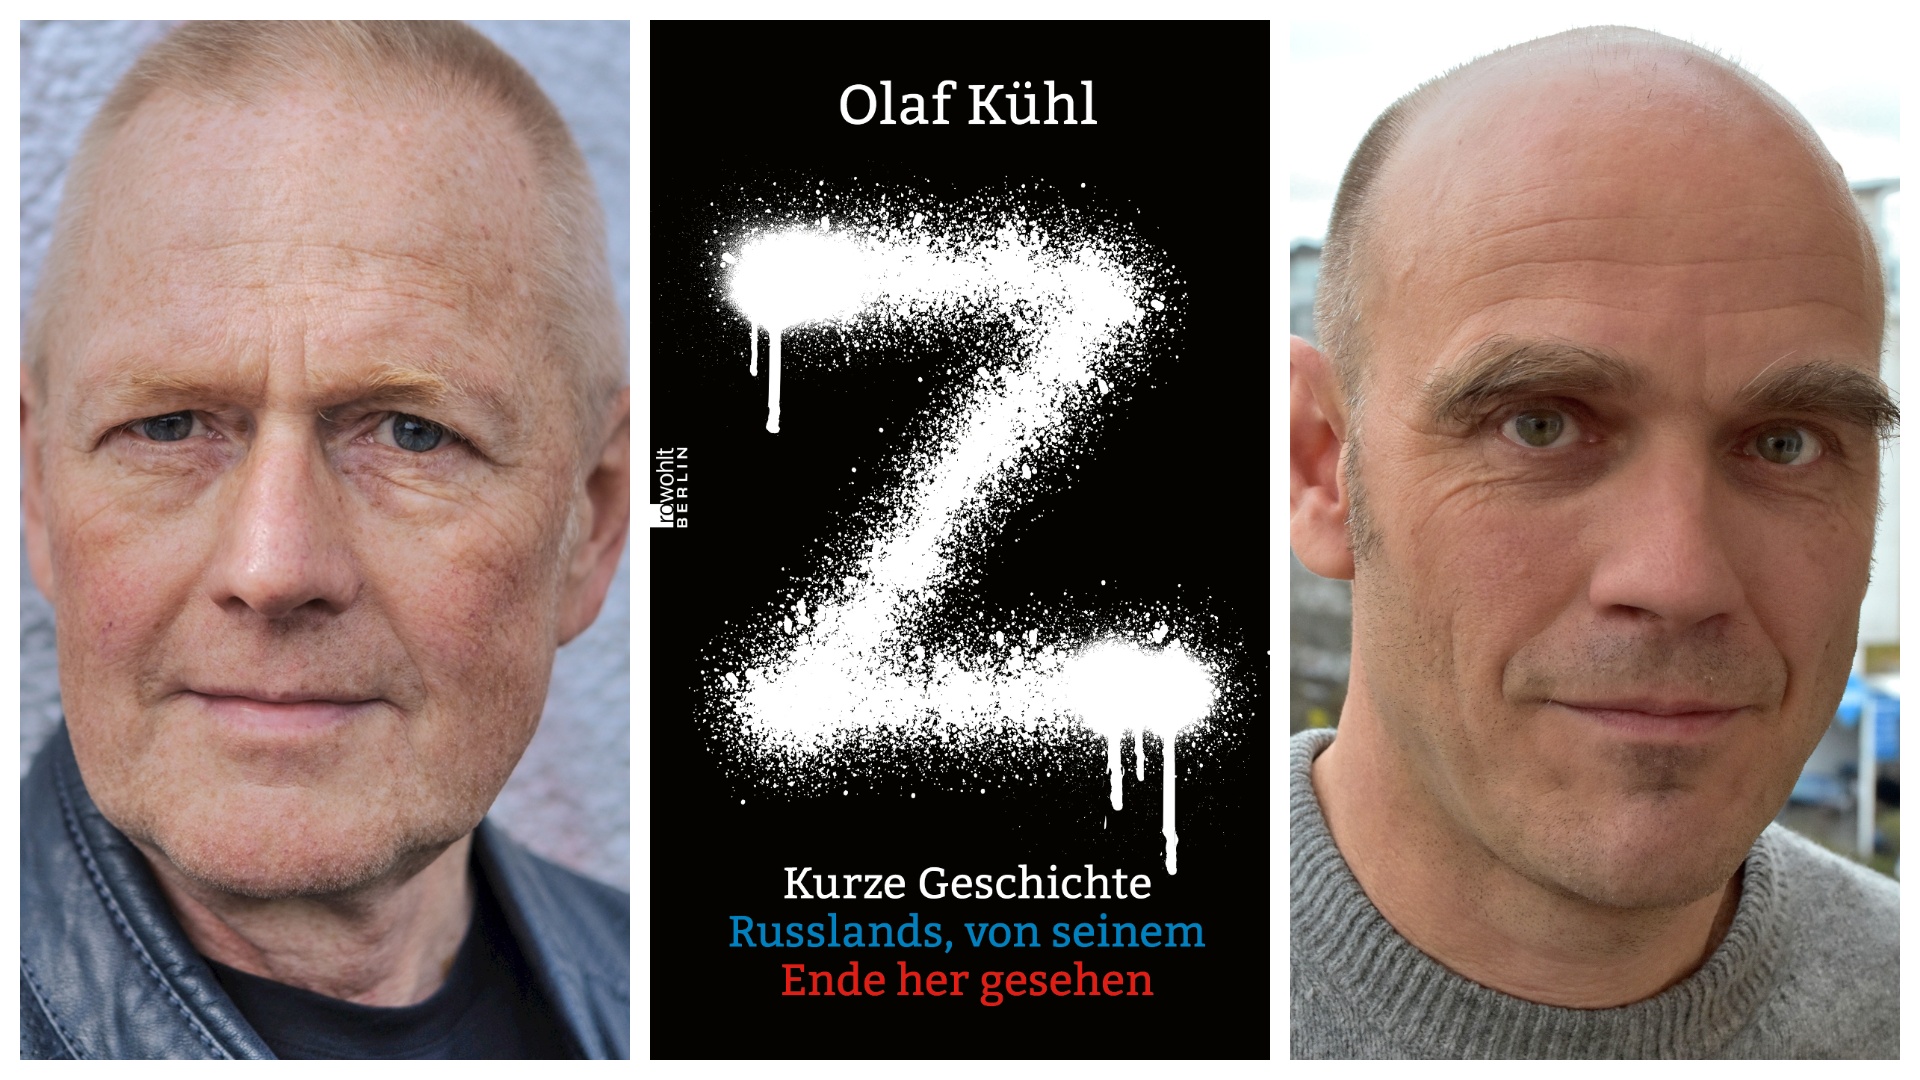 Book presentation: “Z. Kurze Geschichte Russlands, von seinem Ende her gesehen” – Olaf Kühl - 08/06, 19:00